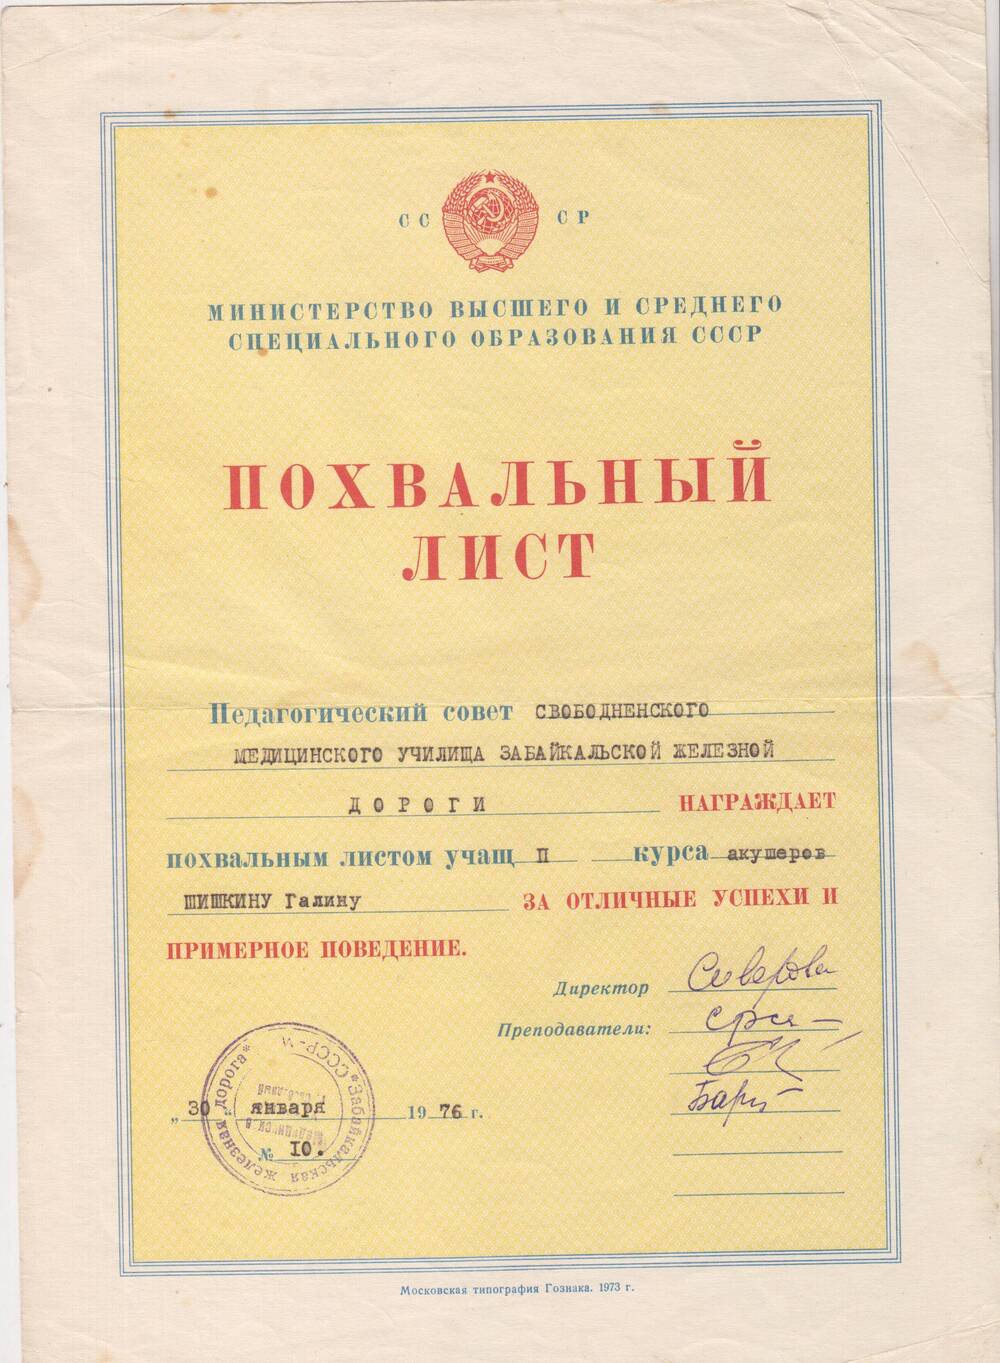 Похвальный лист Шишкиной Галине - студентке II курса Свободненского медицинского училища.